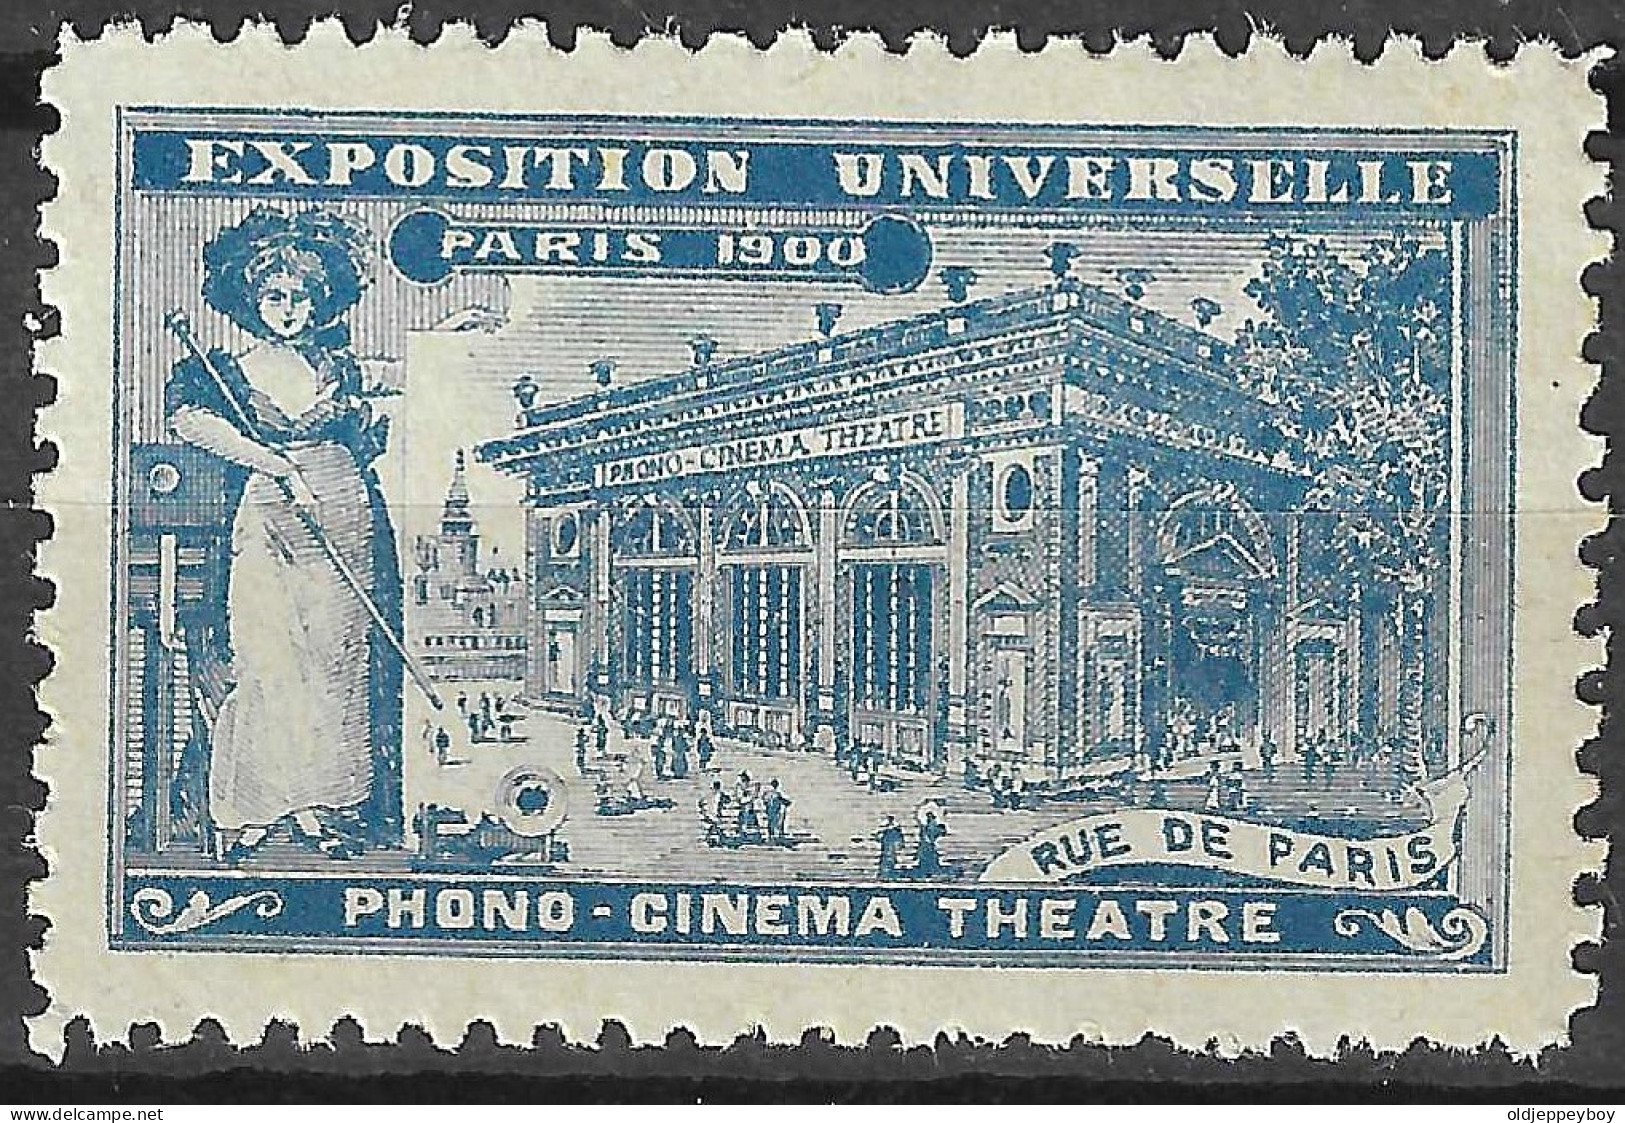 FRANCE ERINOPHILIE FAIR EXPOSITION UNIVERSELLE 1900 PARIS PHONO-CINEMA THEATRE Vignette CINDERELLA MNH** - 1900 – Paris (France)